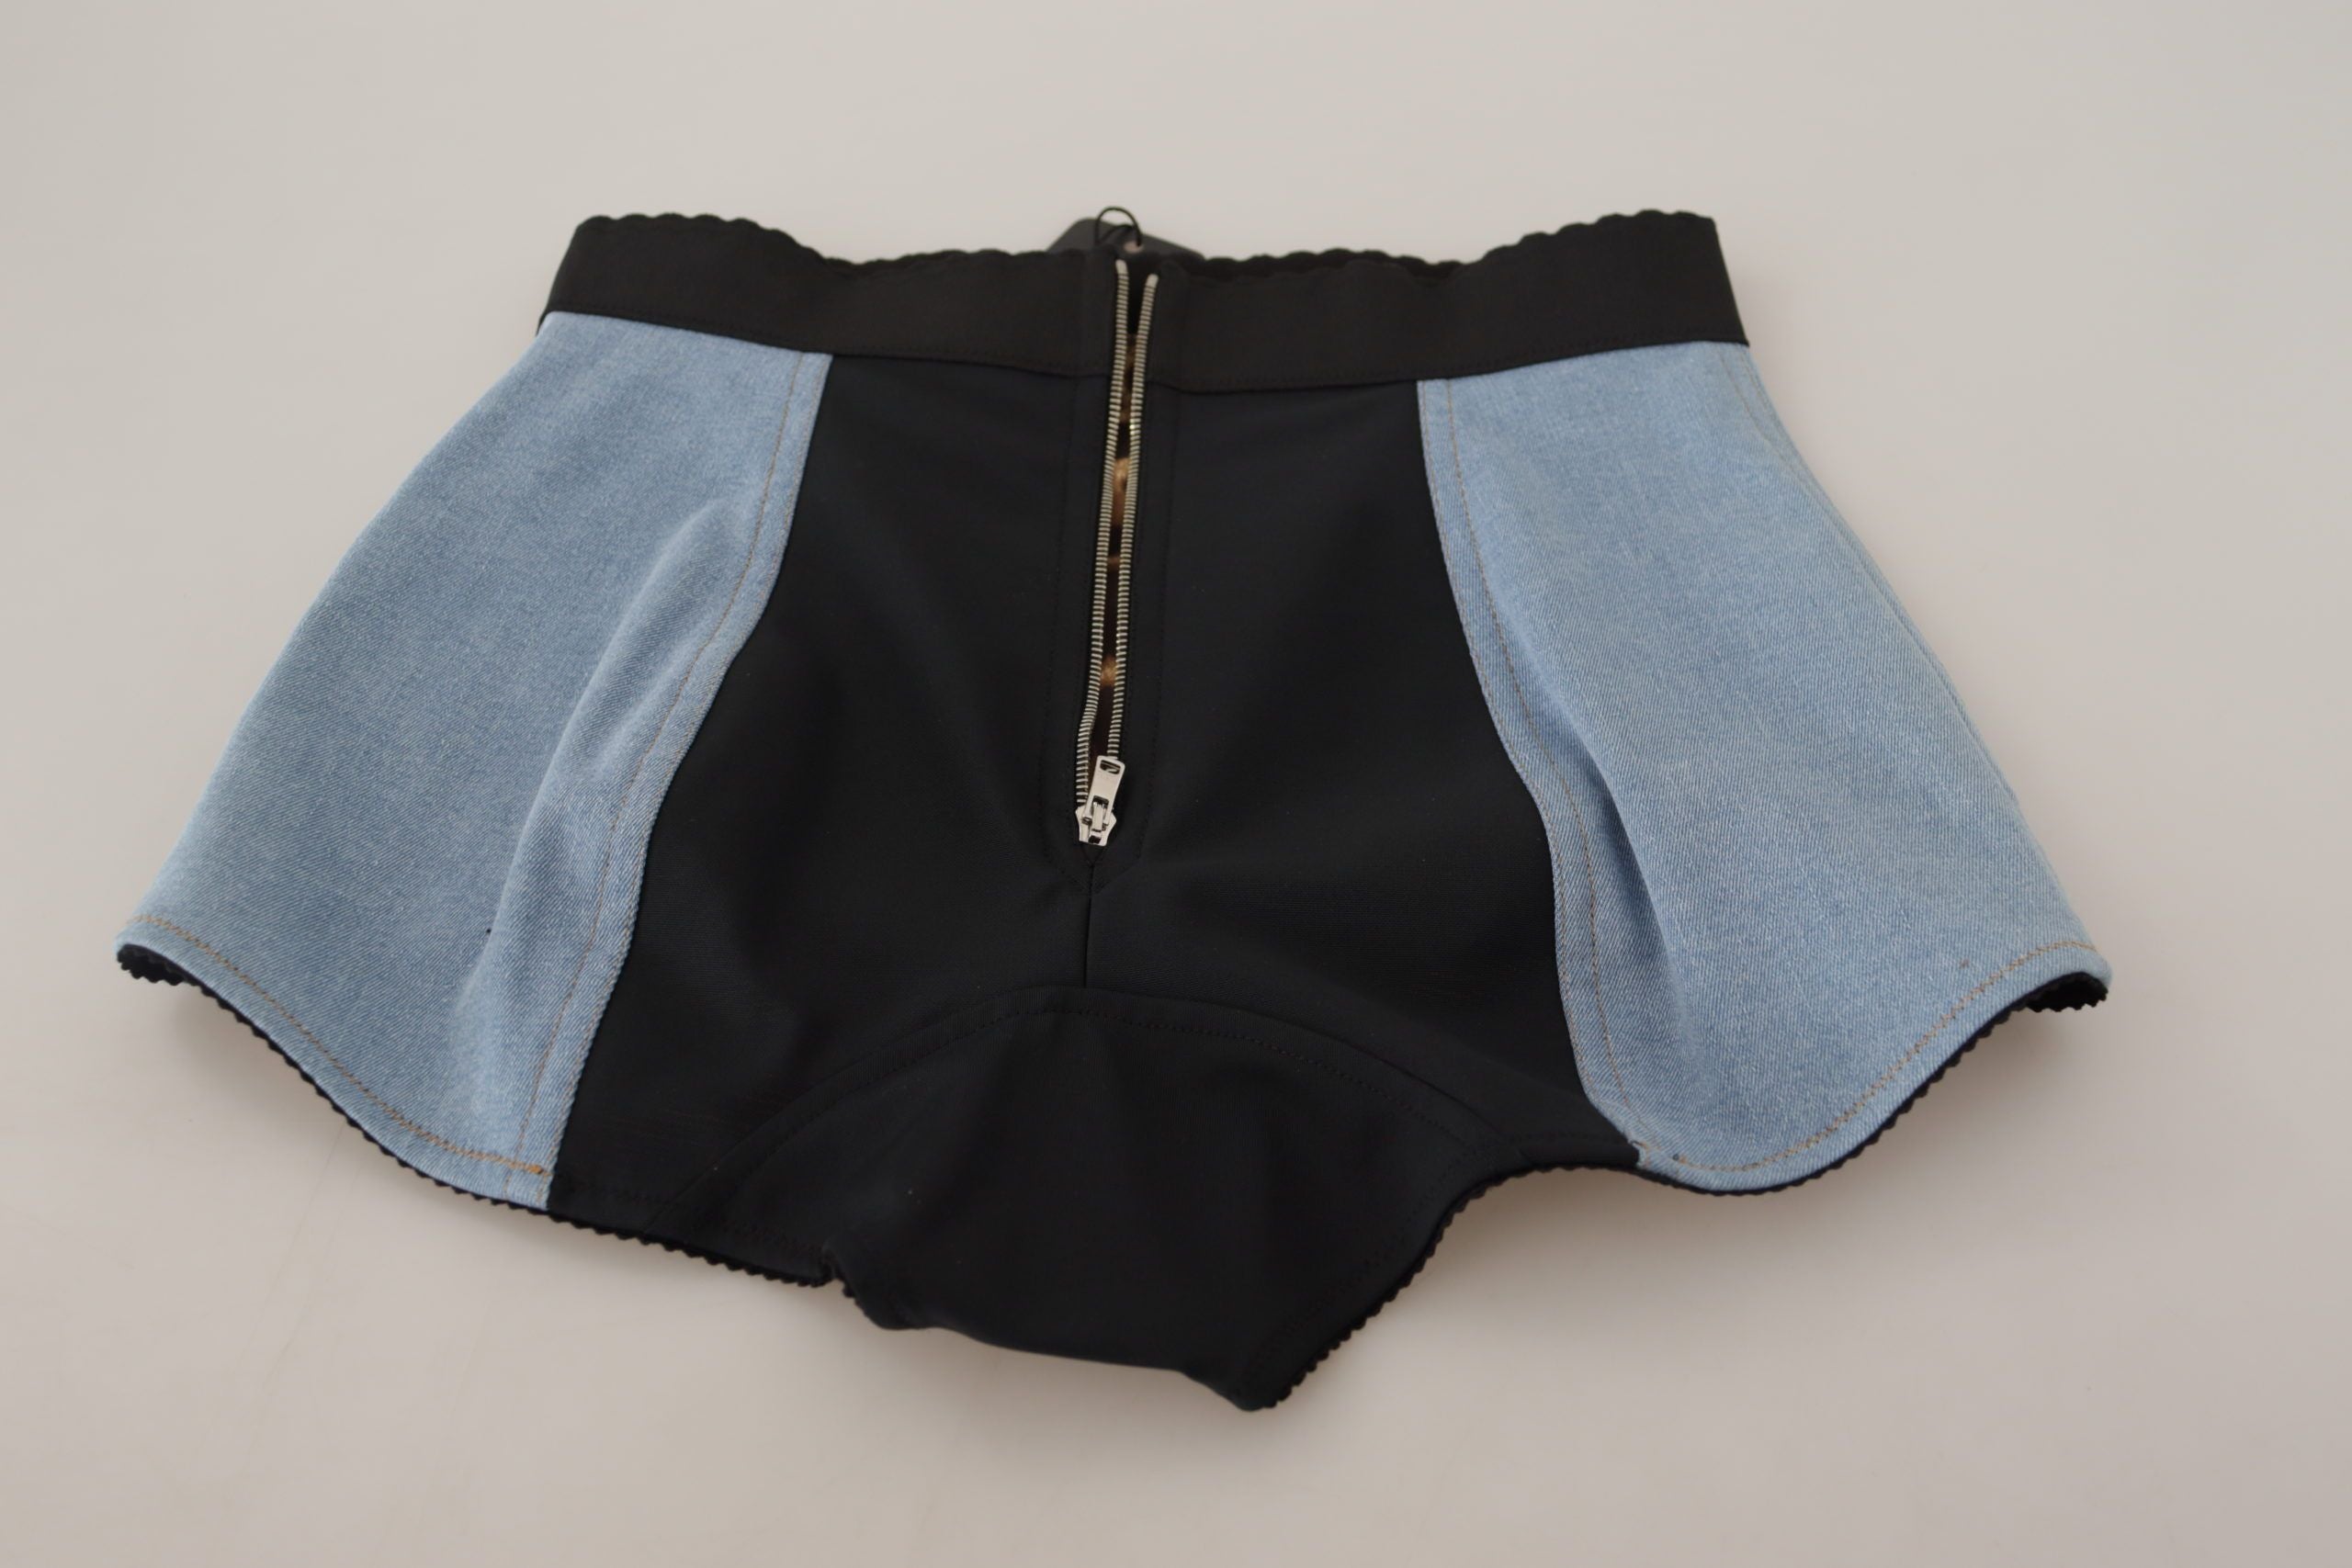 Dolce & Gabbana Light Blue High Waist Hot Pants Cotton Shorts